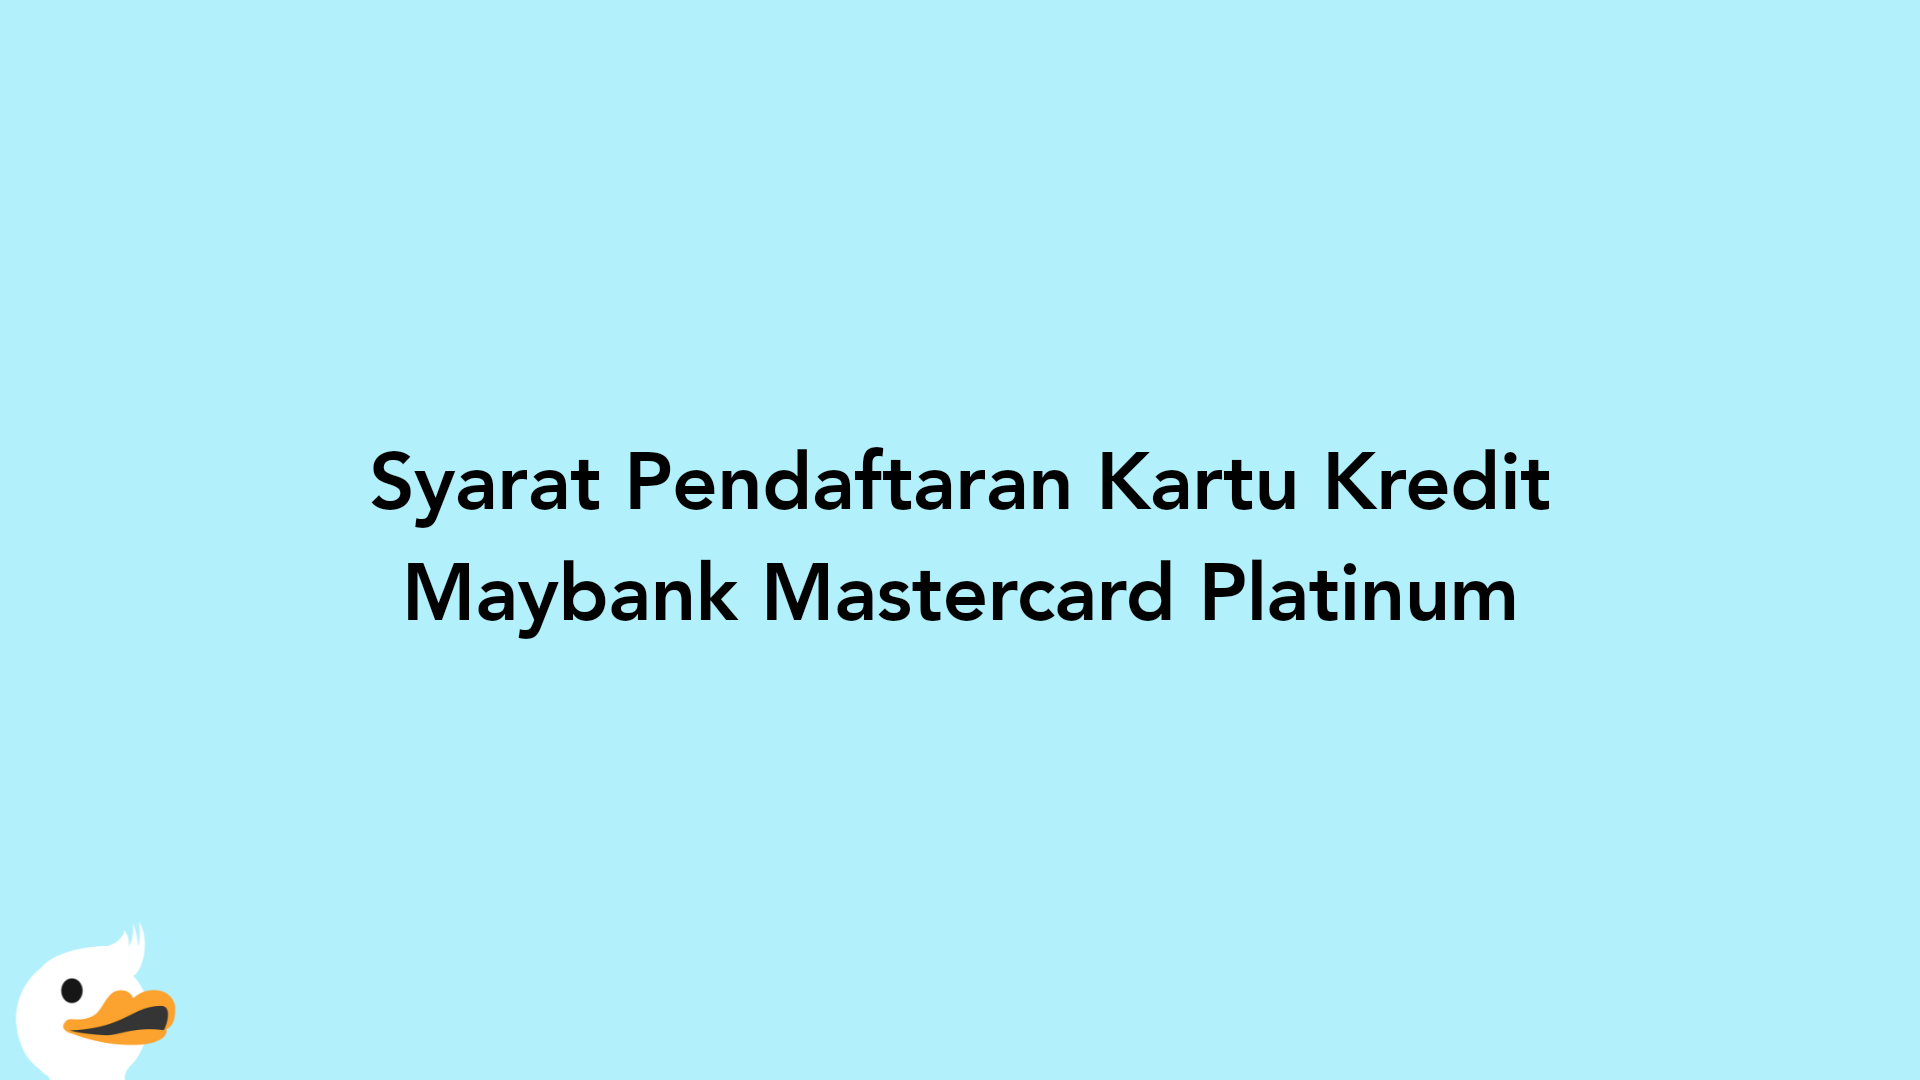 Syarat Pendaftaran Kartu Kredit Maybank Mastercard Platinum